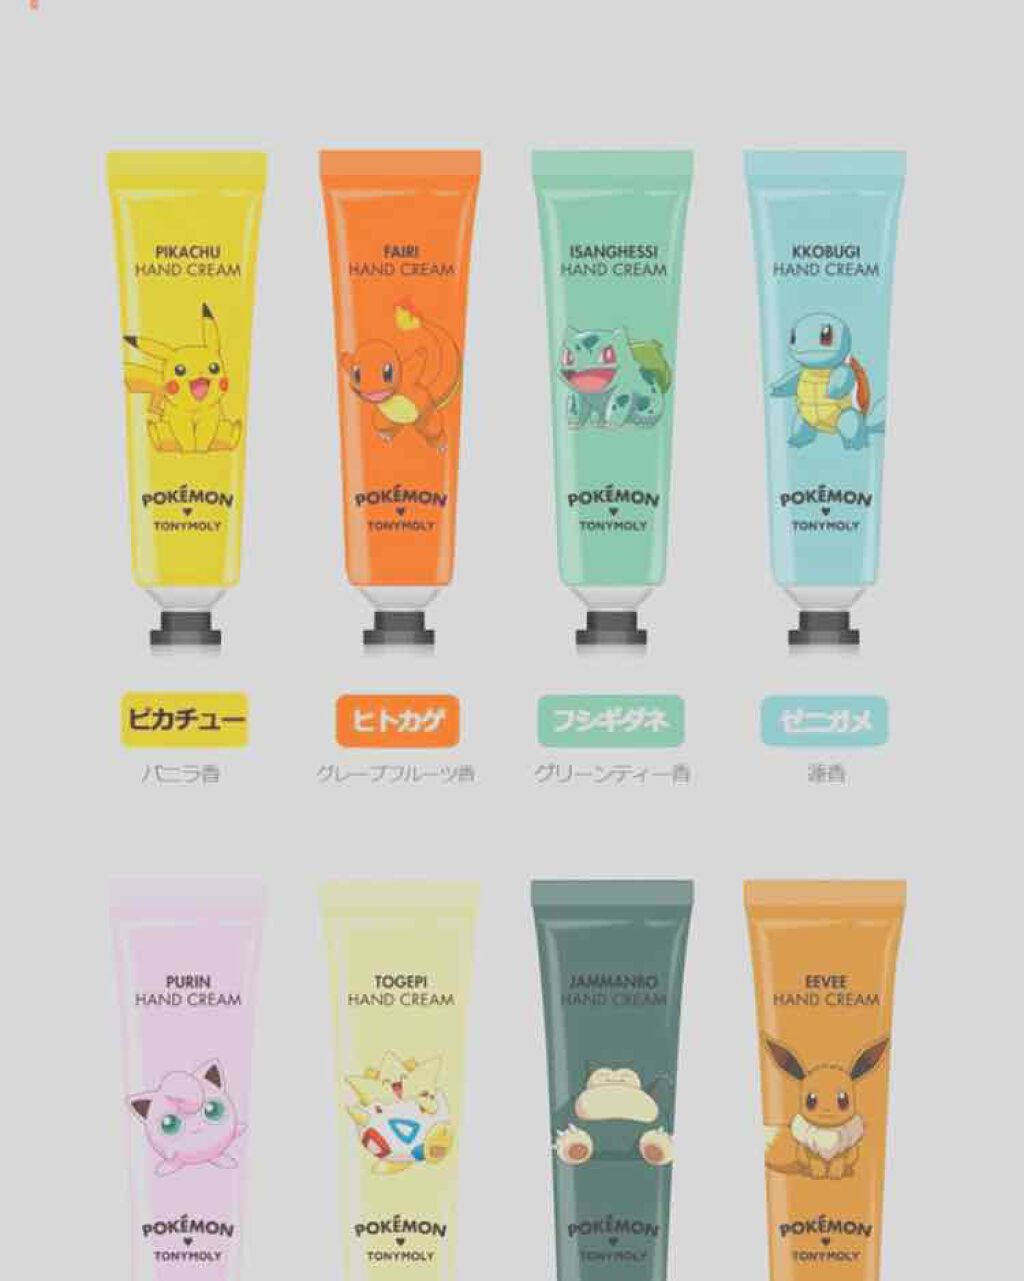 TONYMOLY Pokémon PIKACHU hand cream